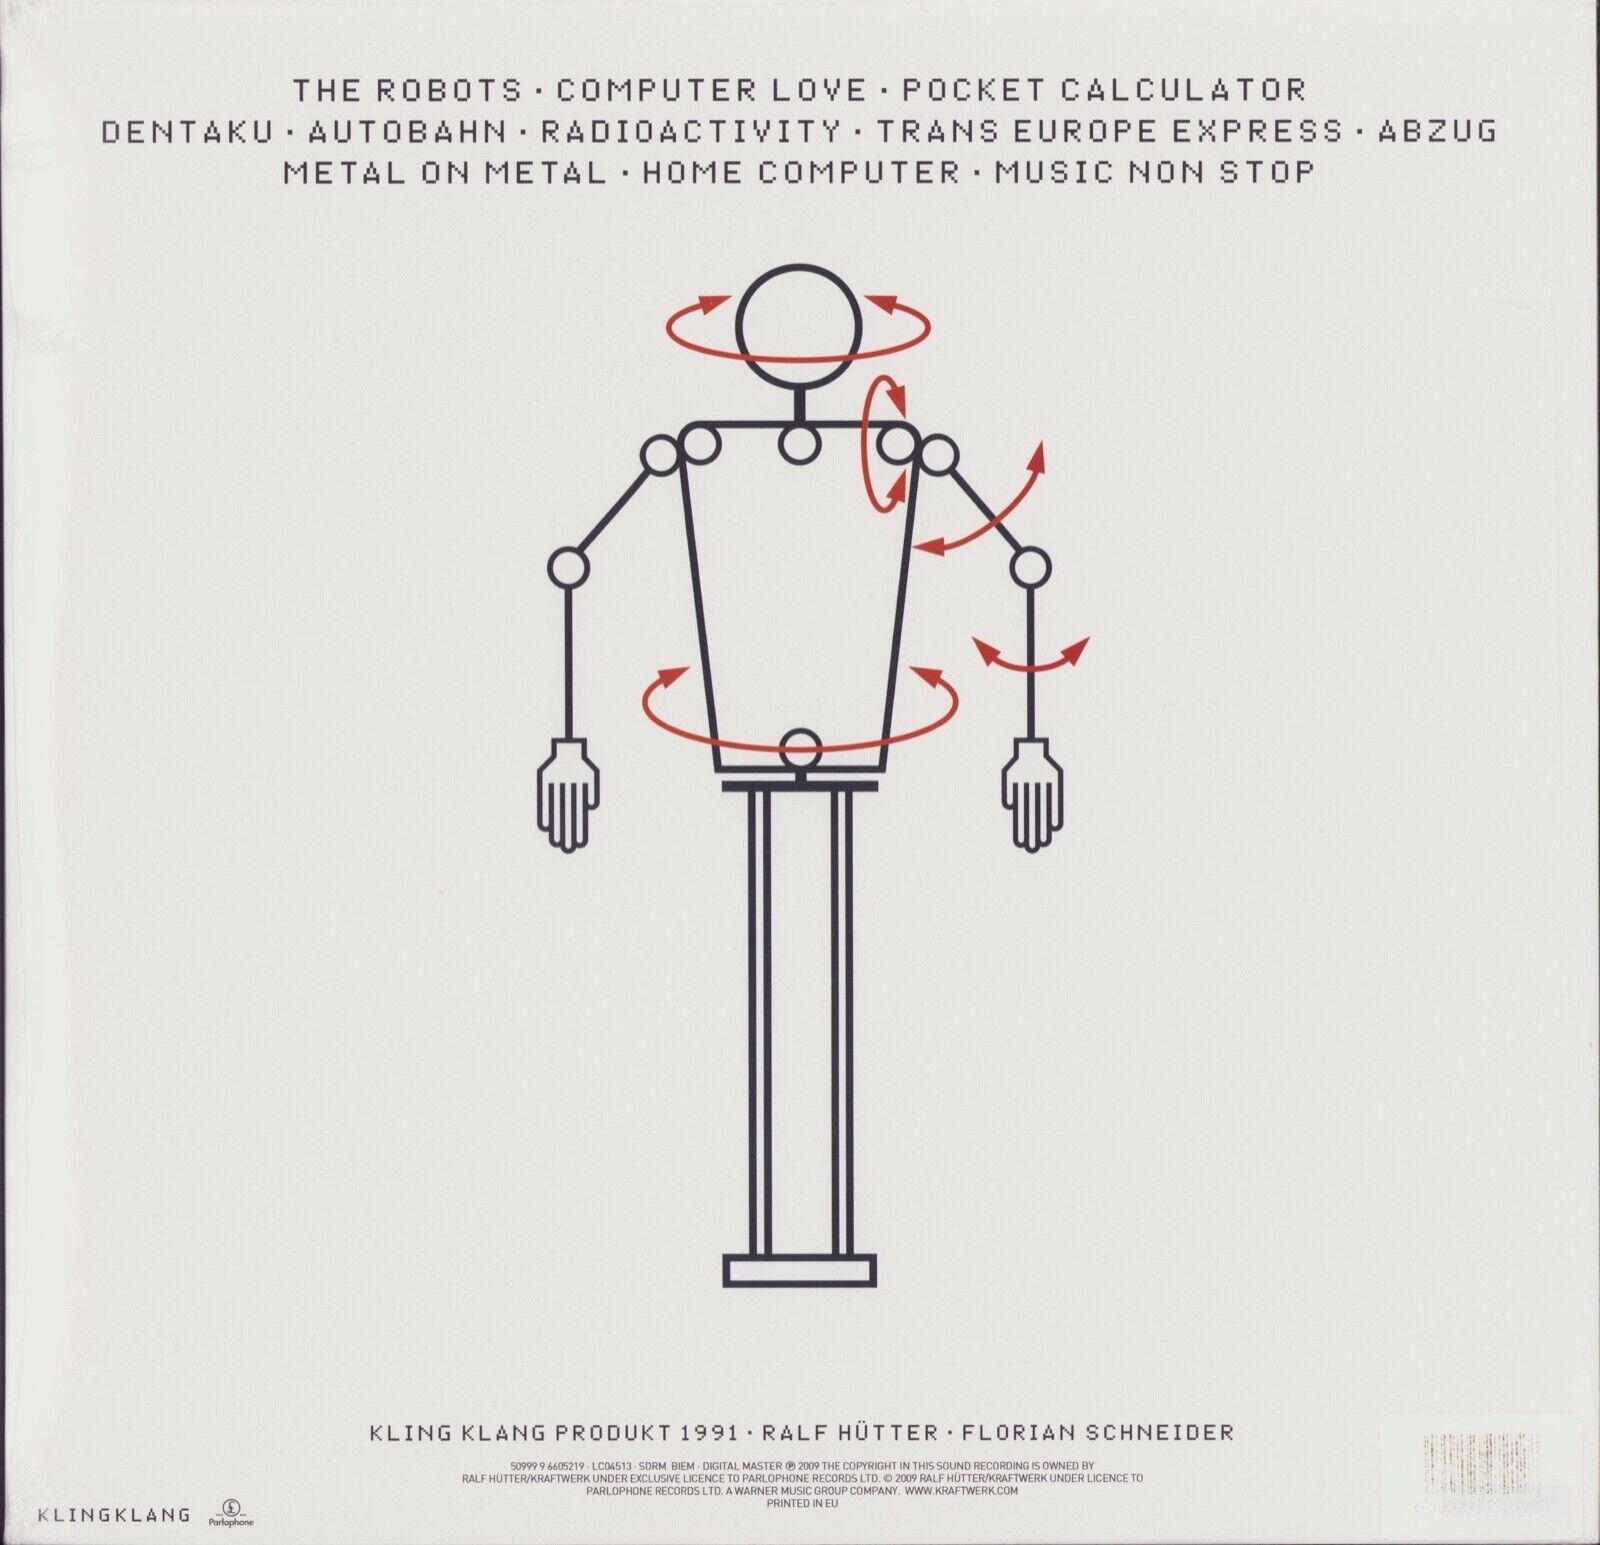 Kraftwerk ‎- The Mix White Vinyl 2LP Special Edition